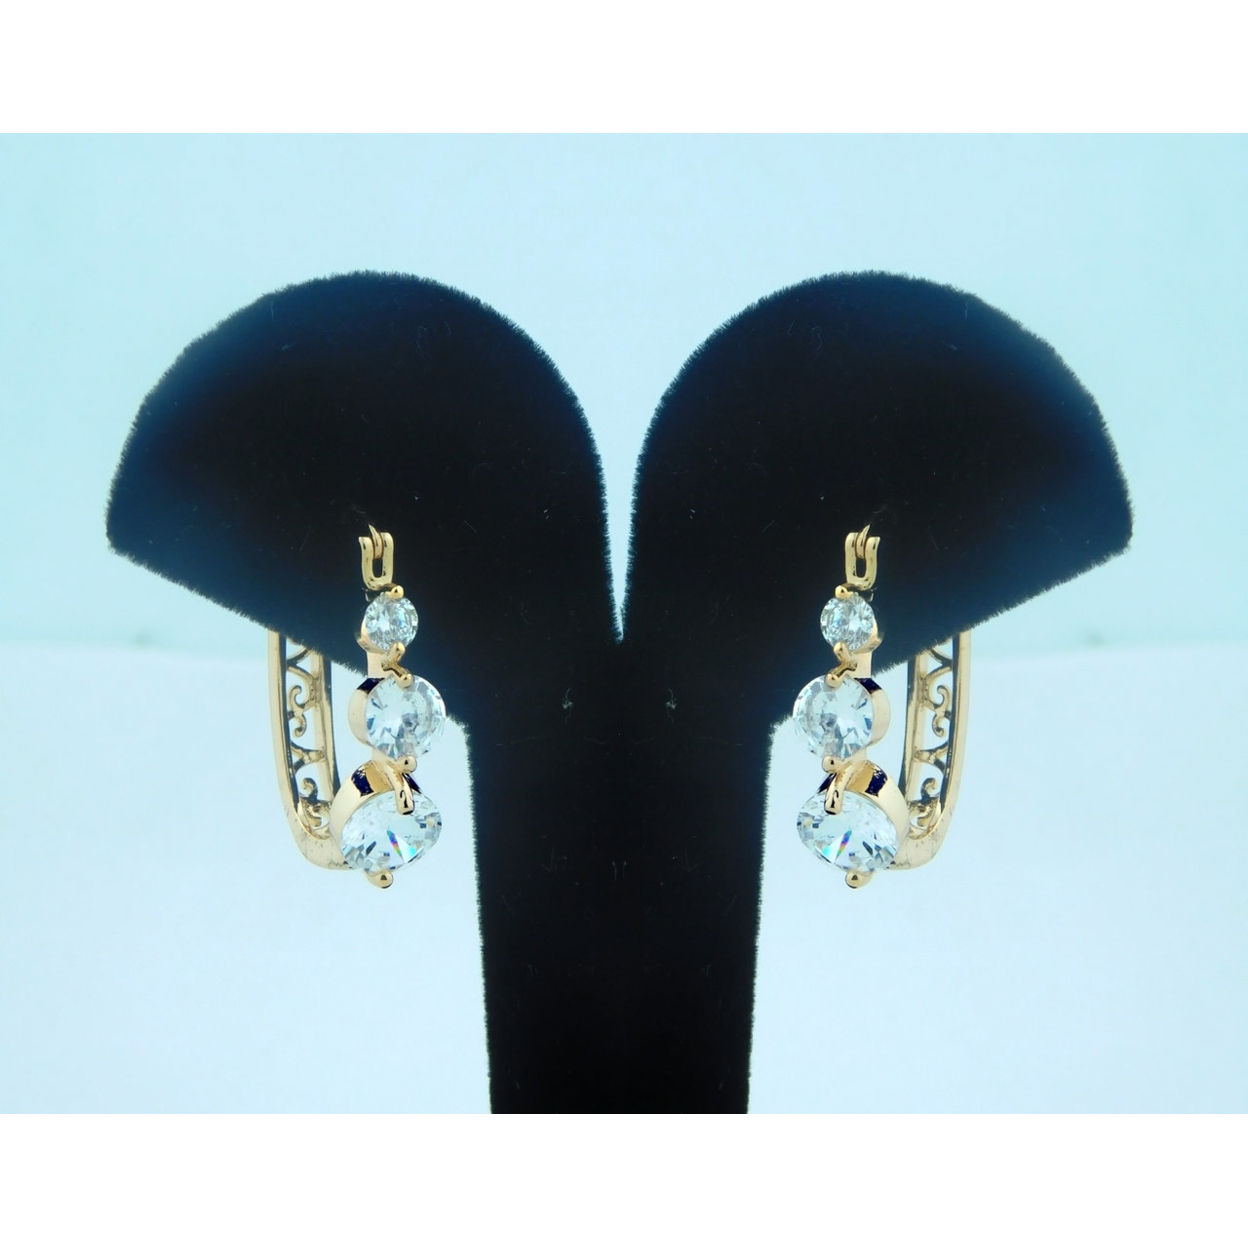 18K Gold Filled Clips On 3 White Stones Earrings